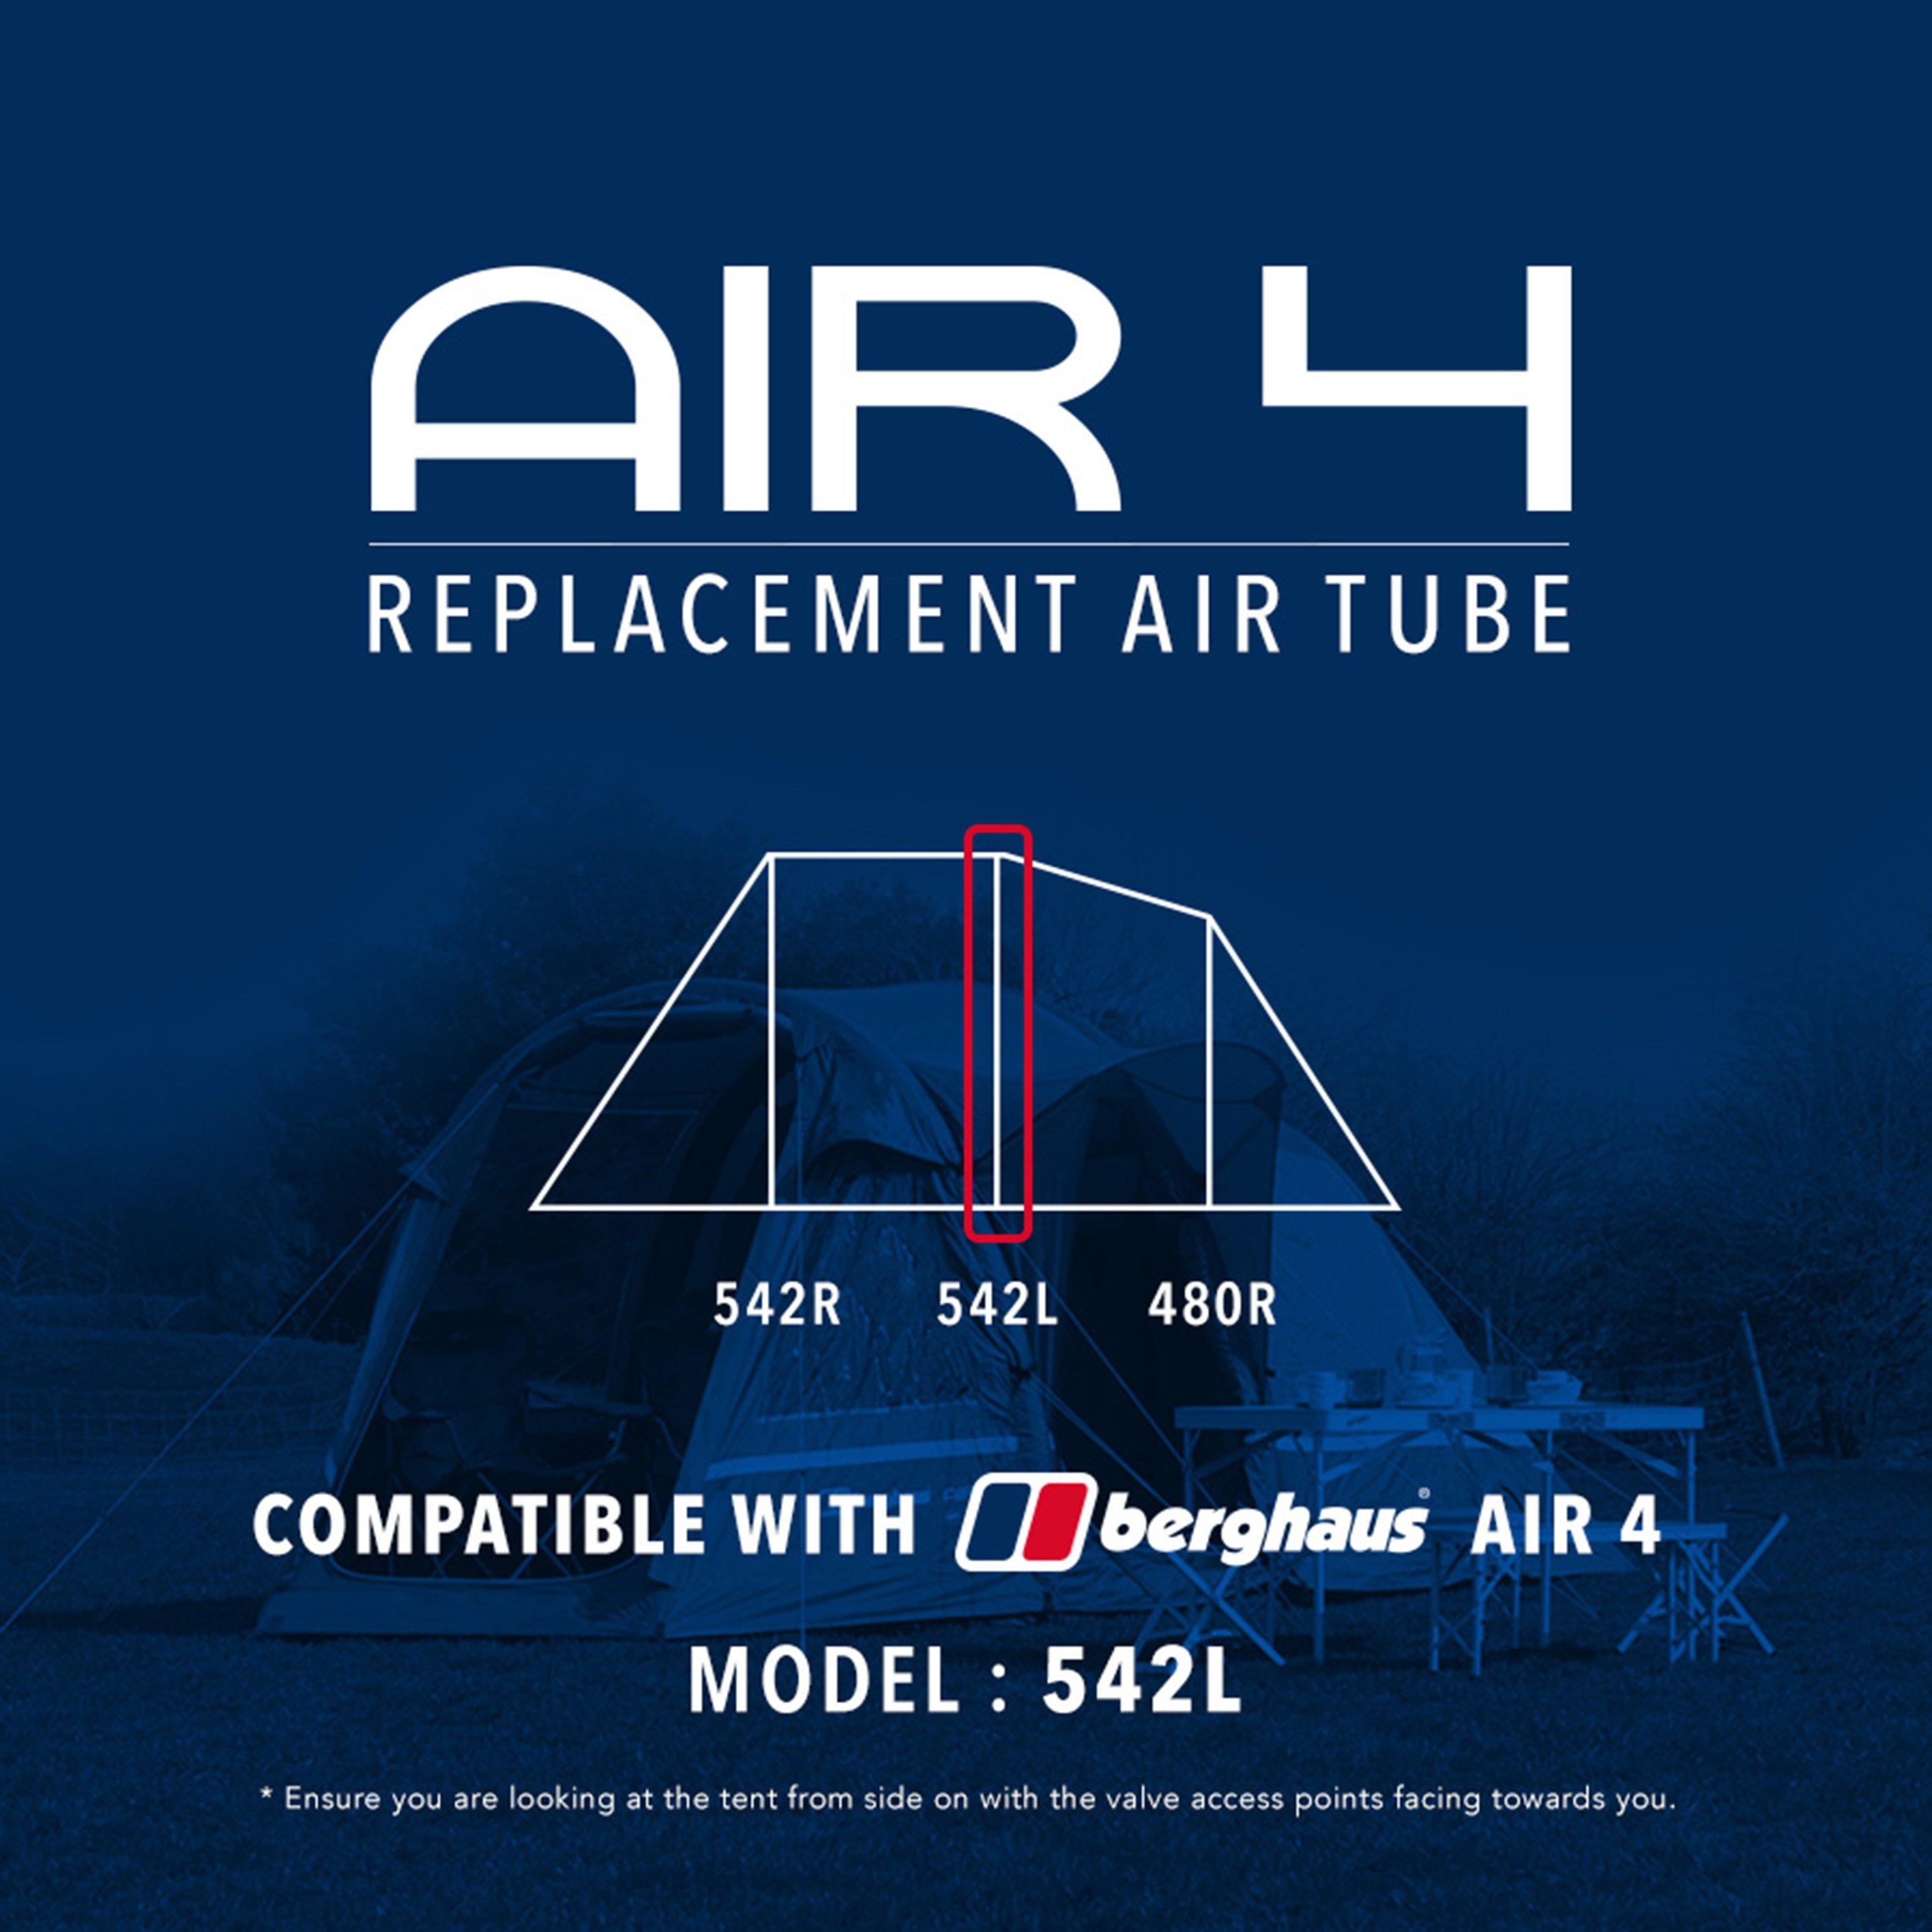 Air 4 Tent Replacement Air Tube - 542L, Black